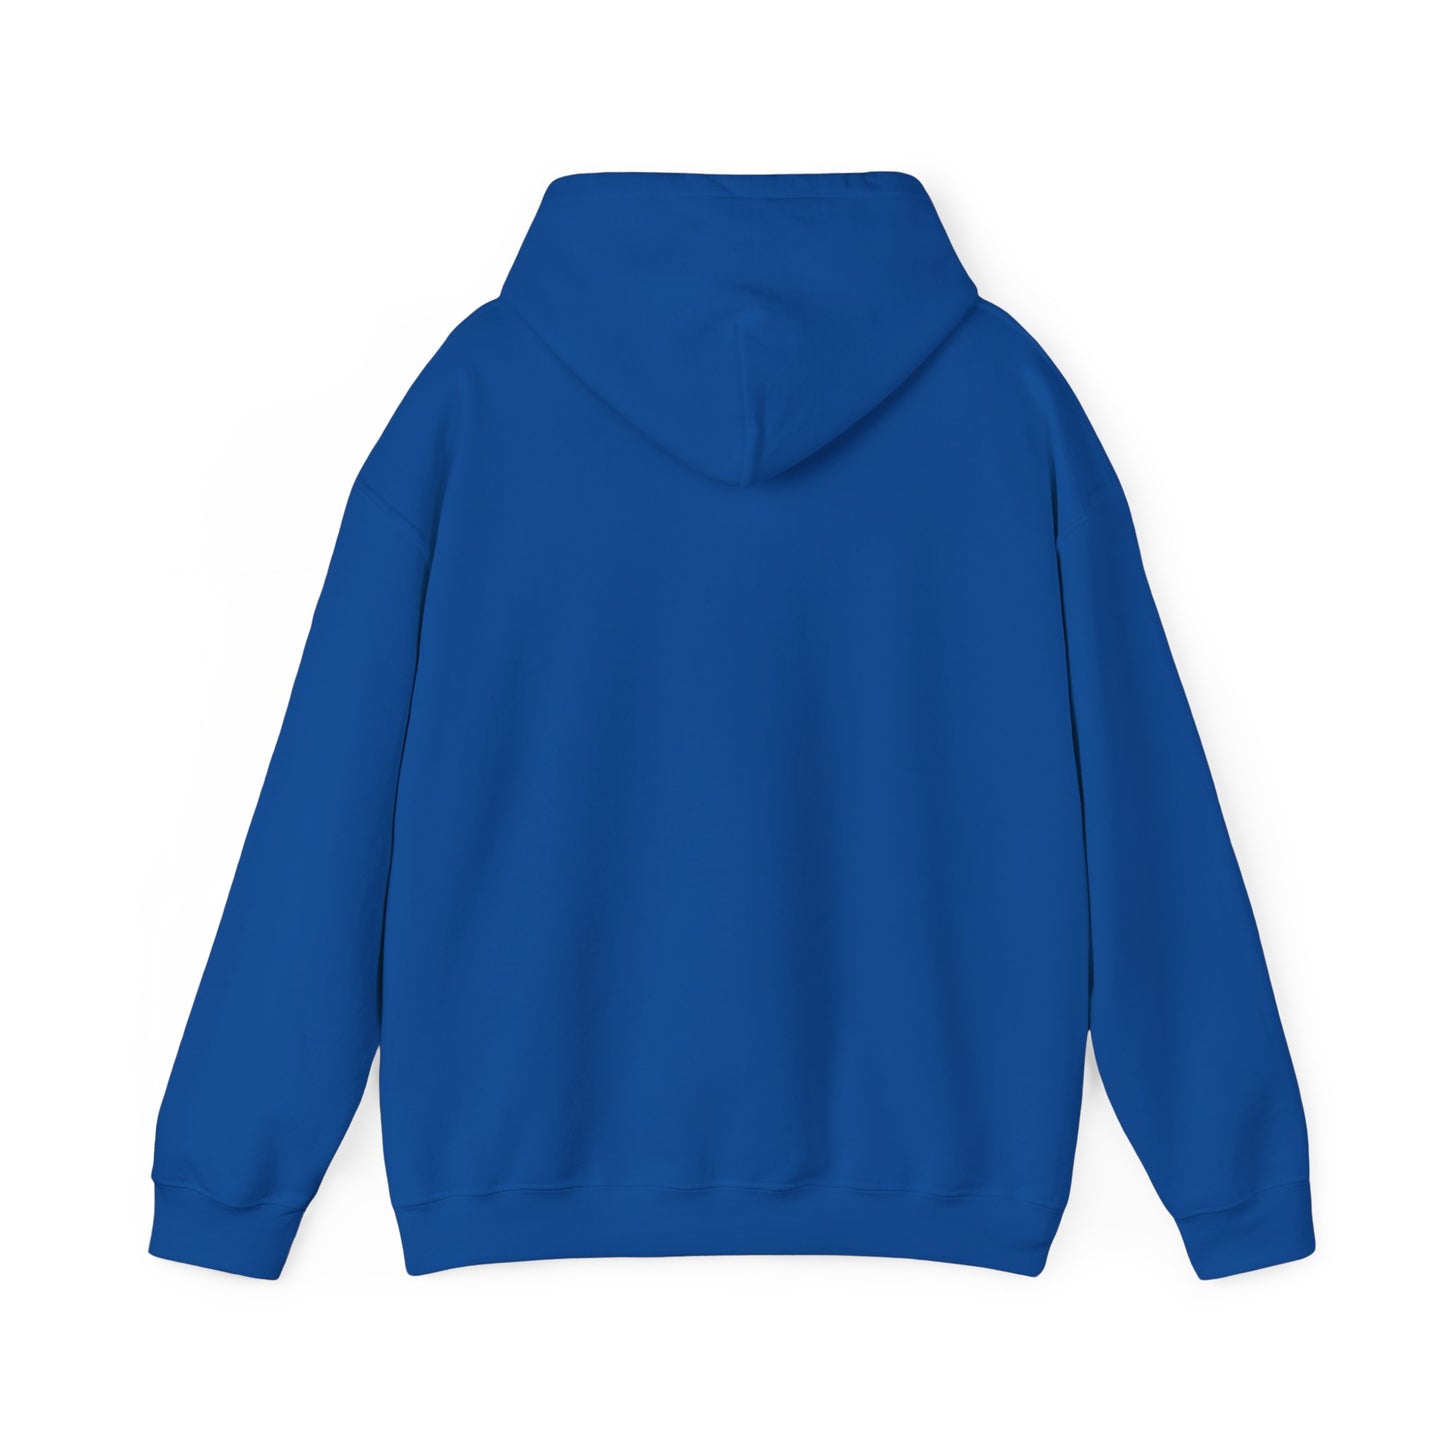 Joe Garrigan is My Friend - Burst - Unisex Heavy Blend™ Hooded Sweatshirt